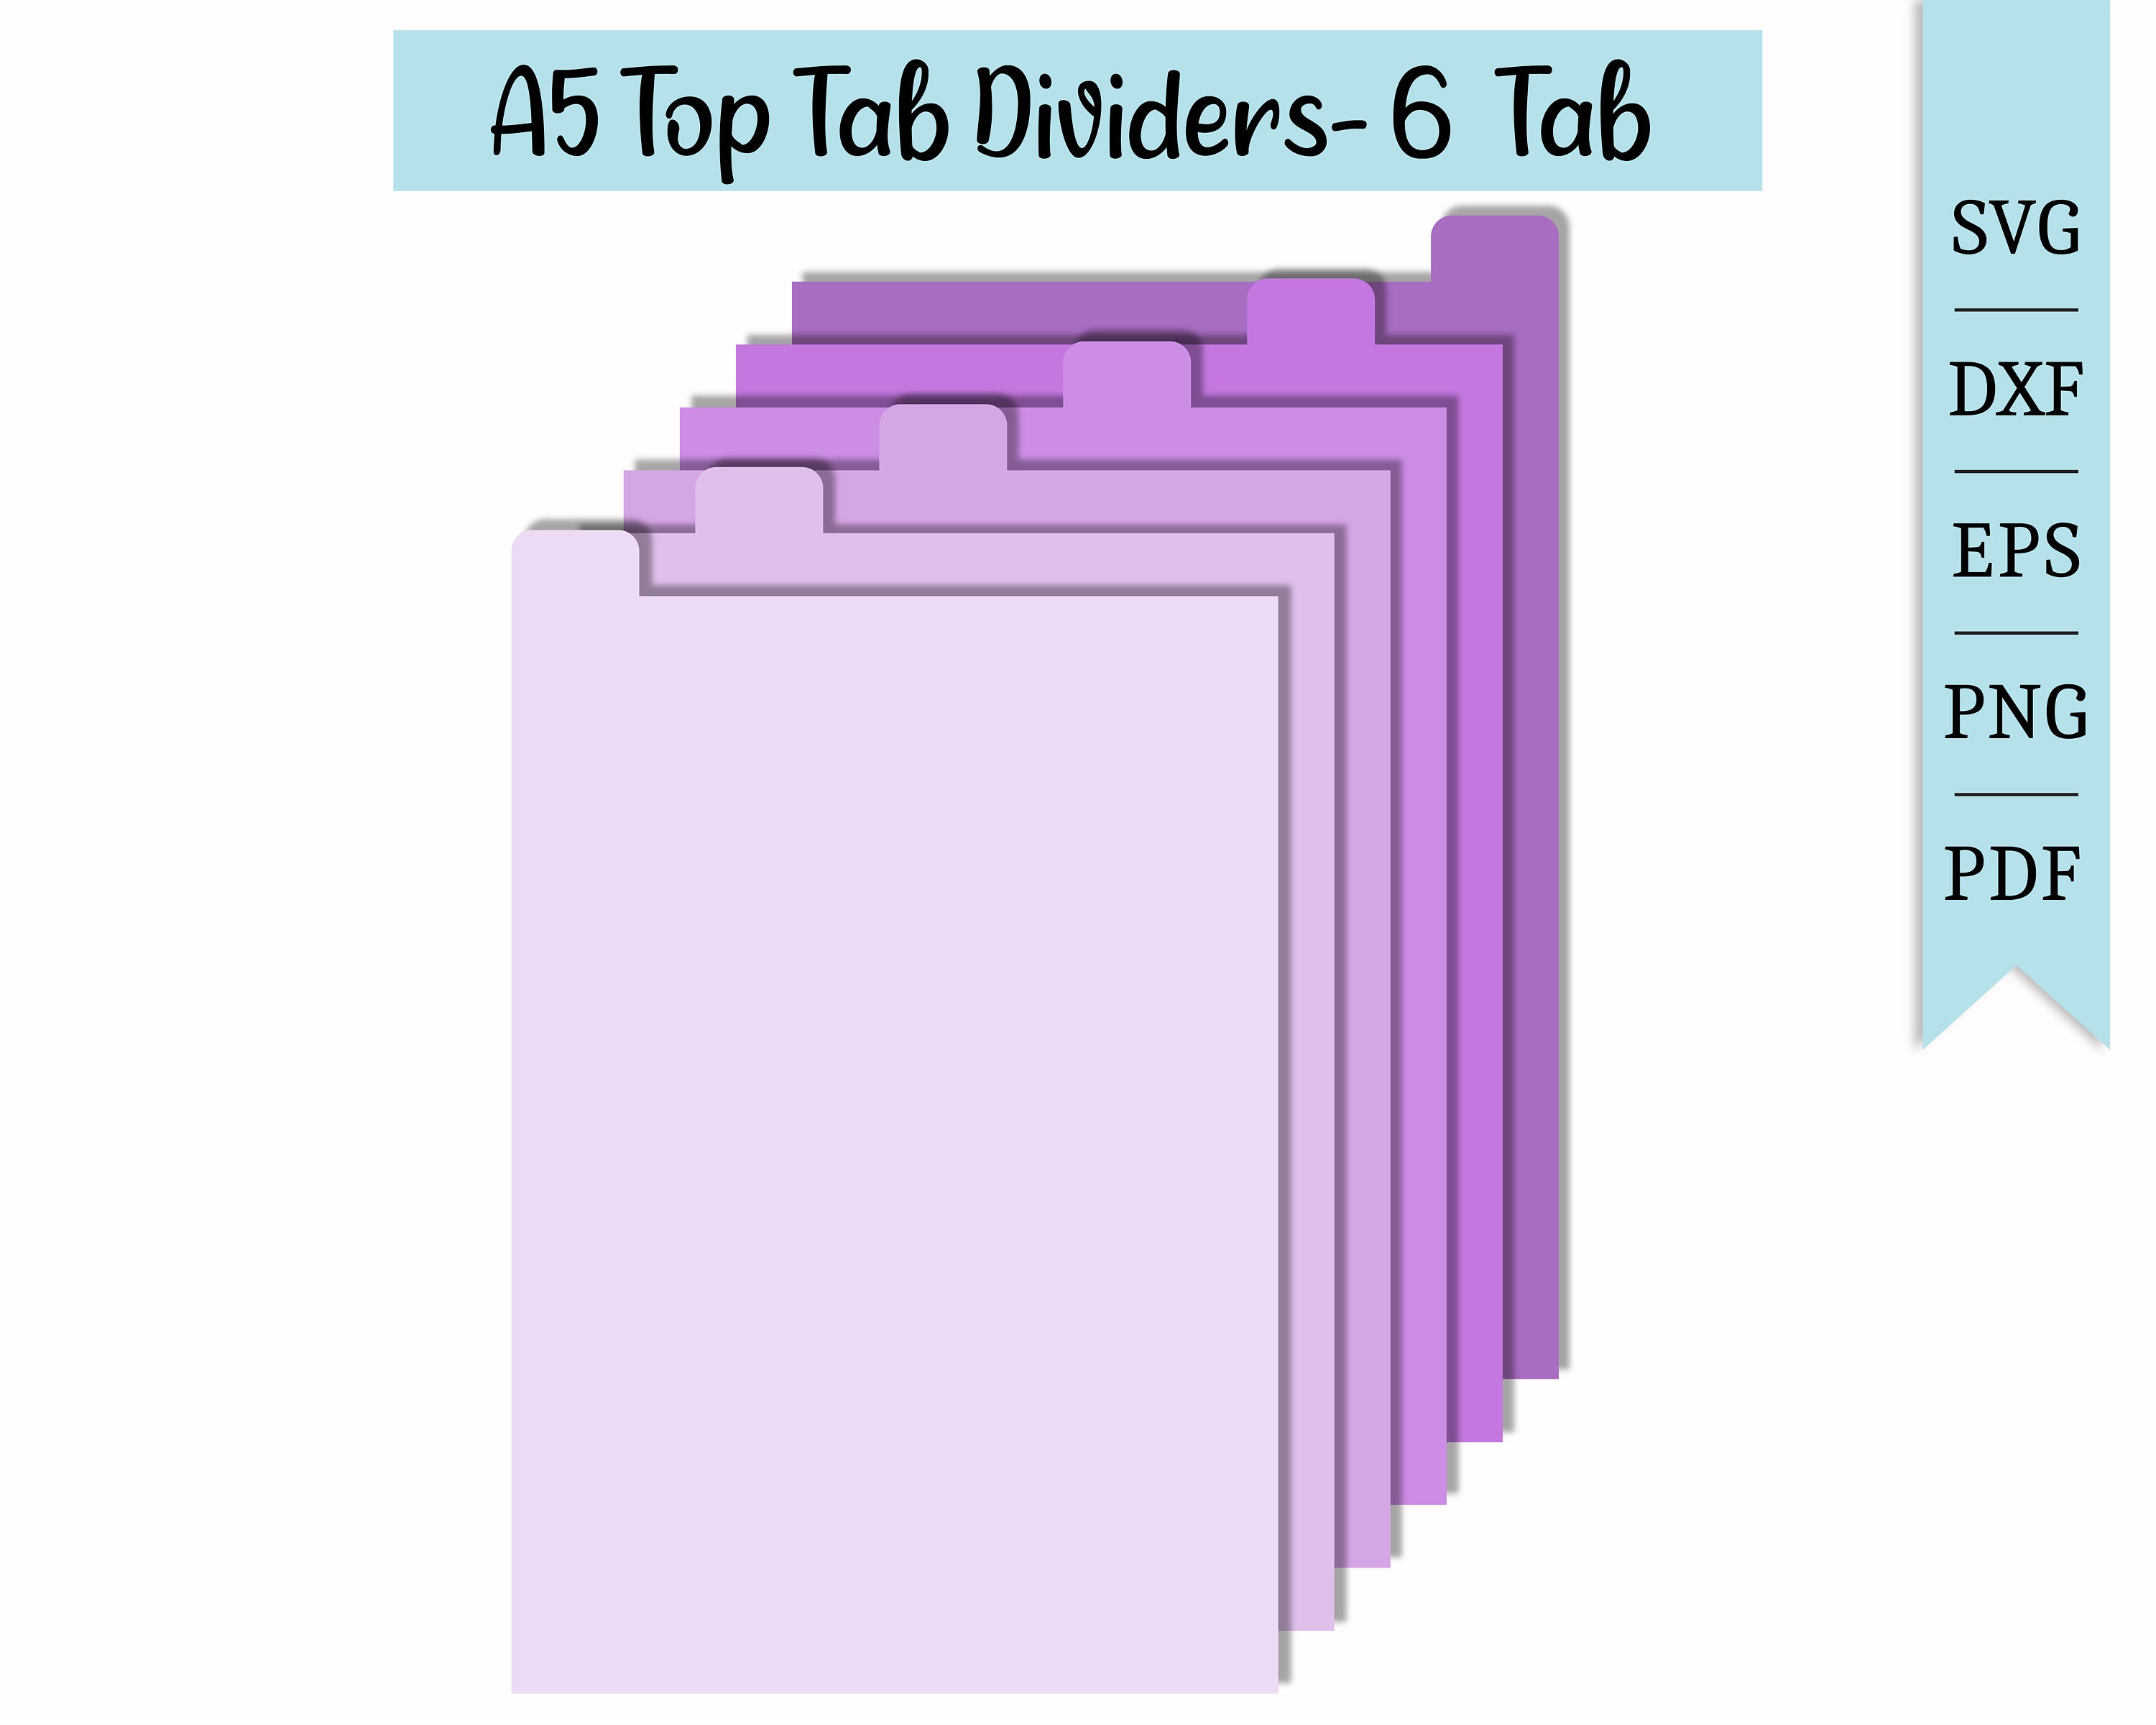 Index Card Divider Sets / 3x 5 Index Card Dividers / Vintage Alphabetical  or Numerical Card Guide Sets / Blue or Beige 